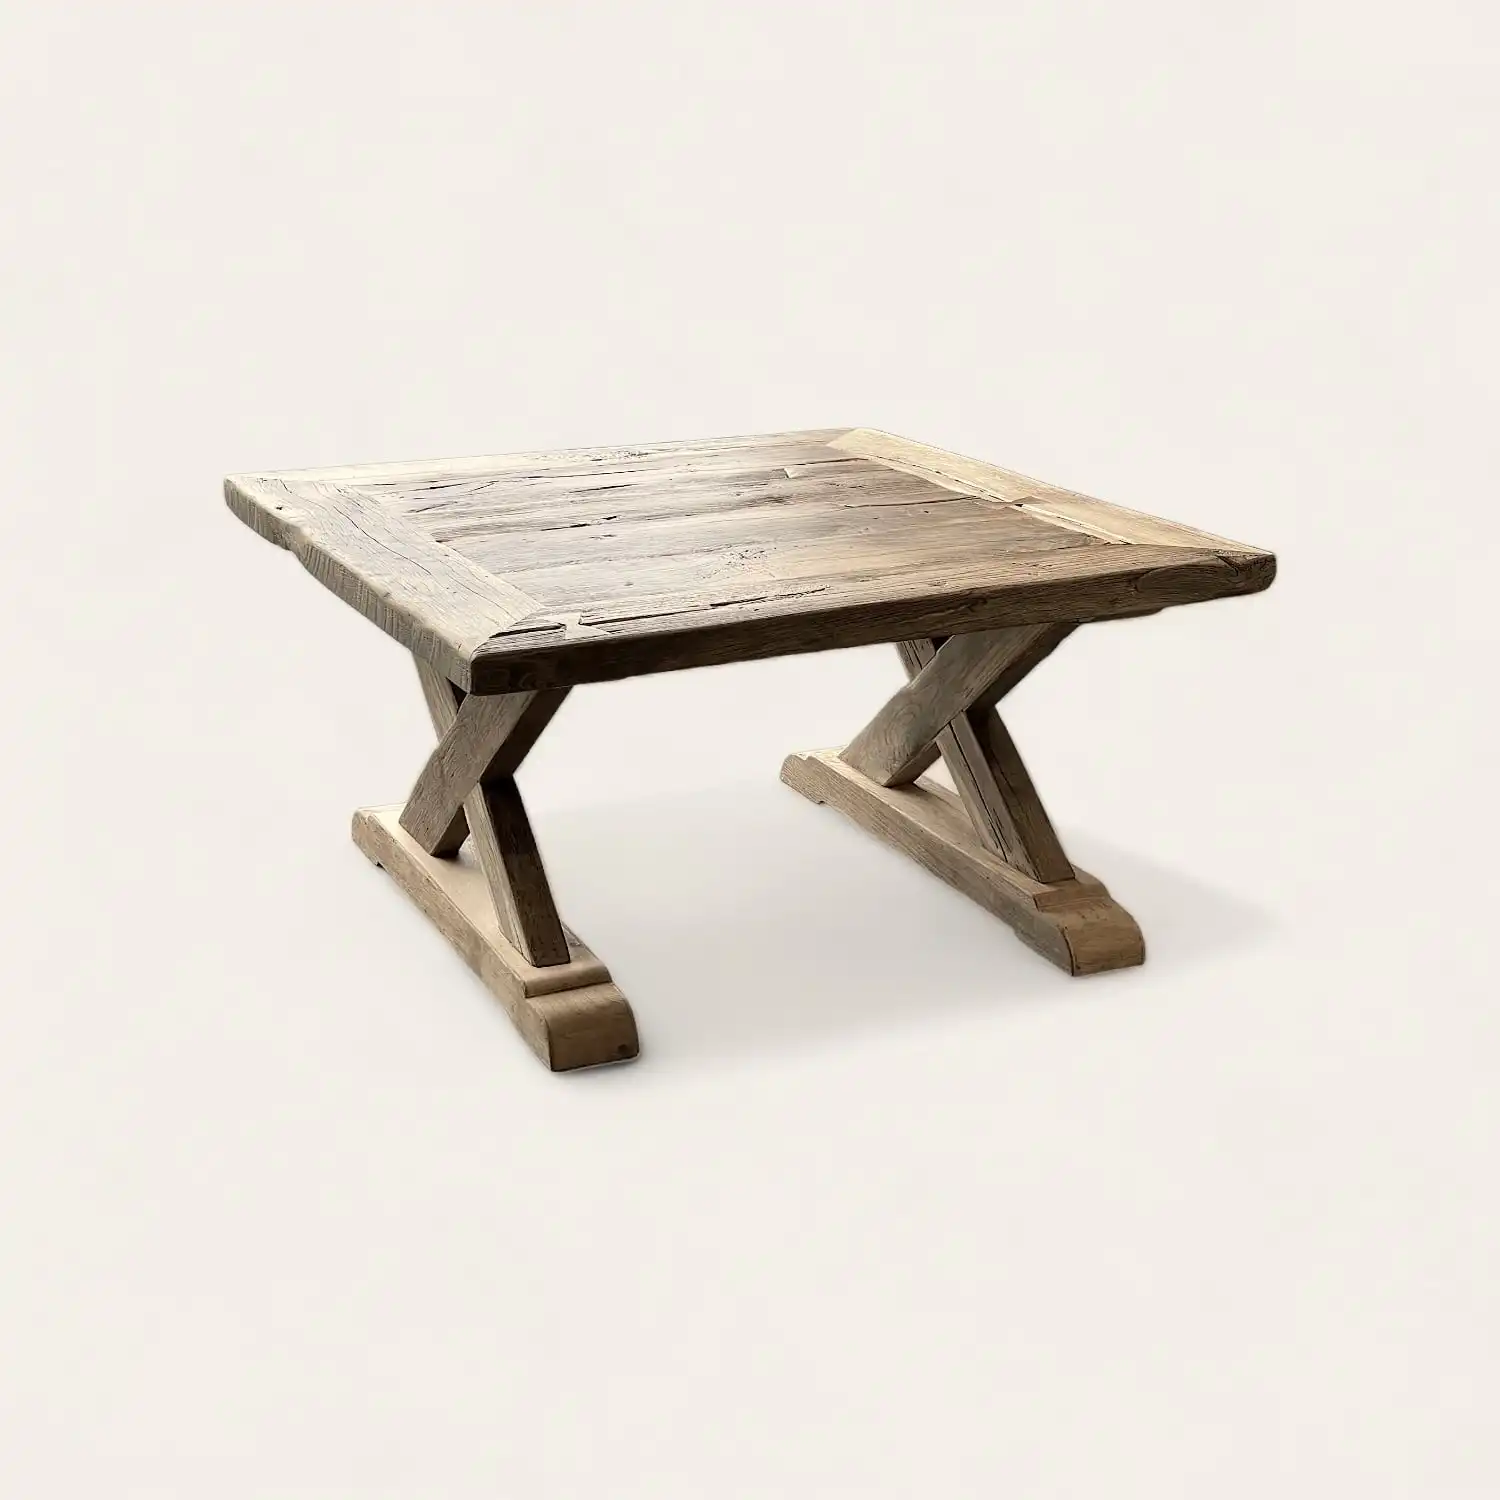  Table carrée de style fermette, composée de bois ancien robuste. Elle présente un plateau en bois rustique avec des marques d'usure et une patine qui témoigne de son histoire. La table repose sur deux pieds en X, solides et équilibrés, qui accentuent son aspect traditionnel et authentique. 